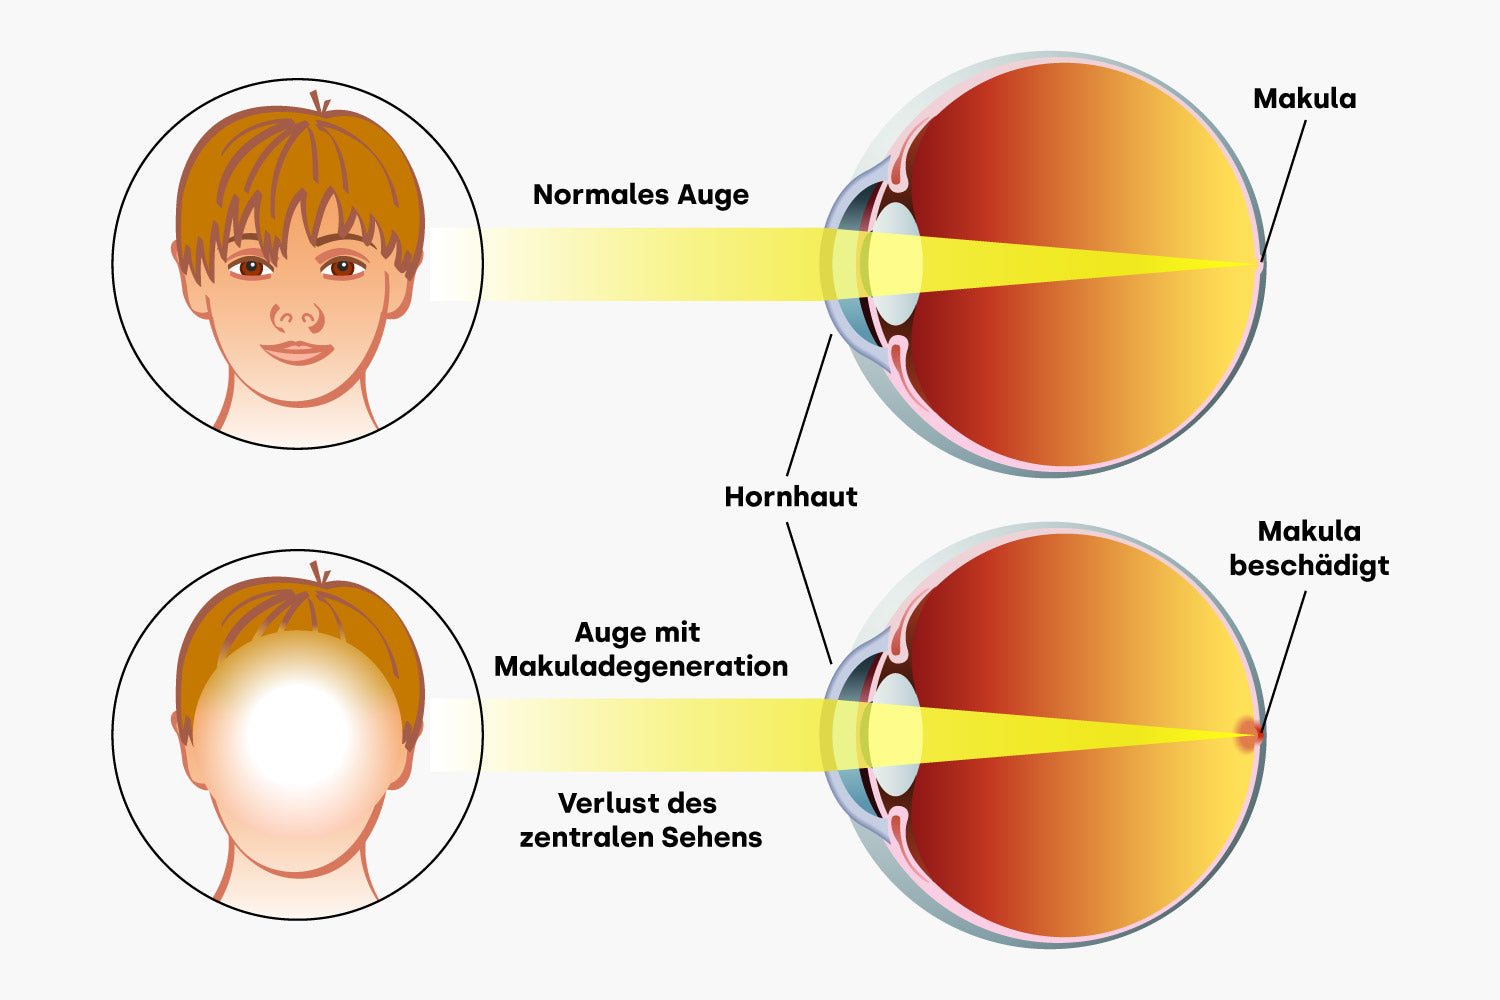 Normales Auge und Auge mit Makuladegeneration